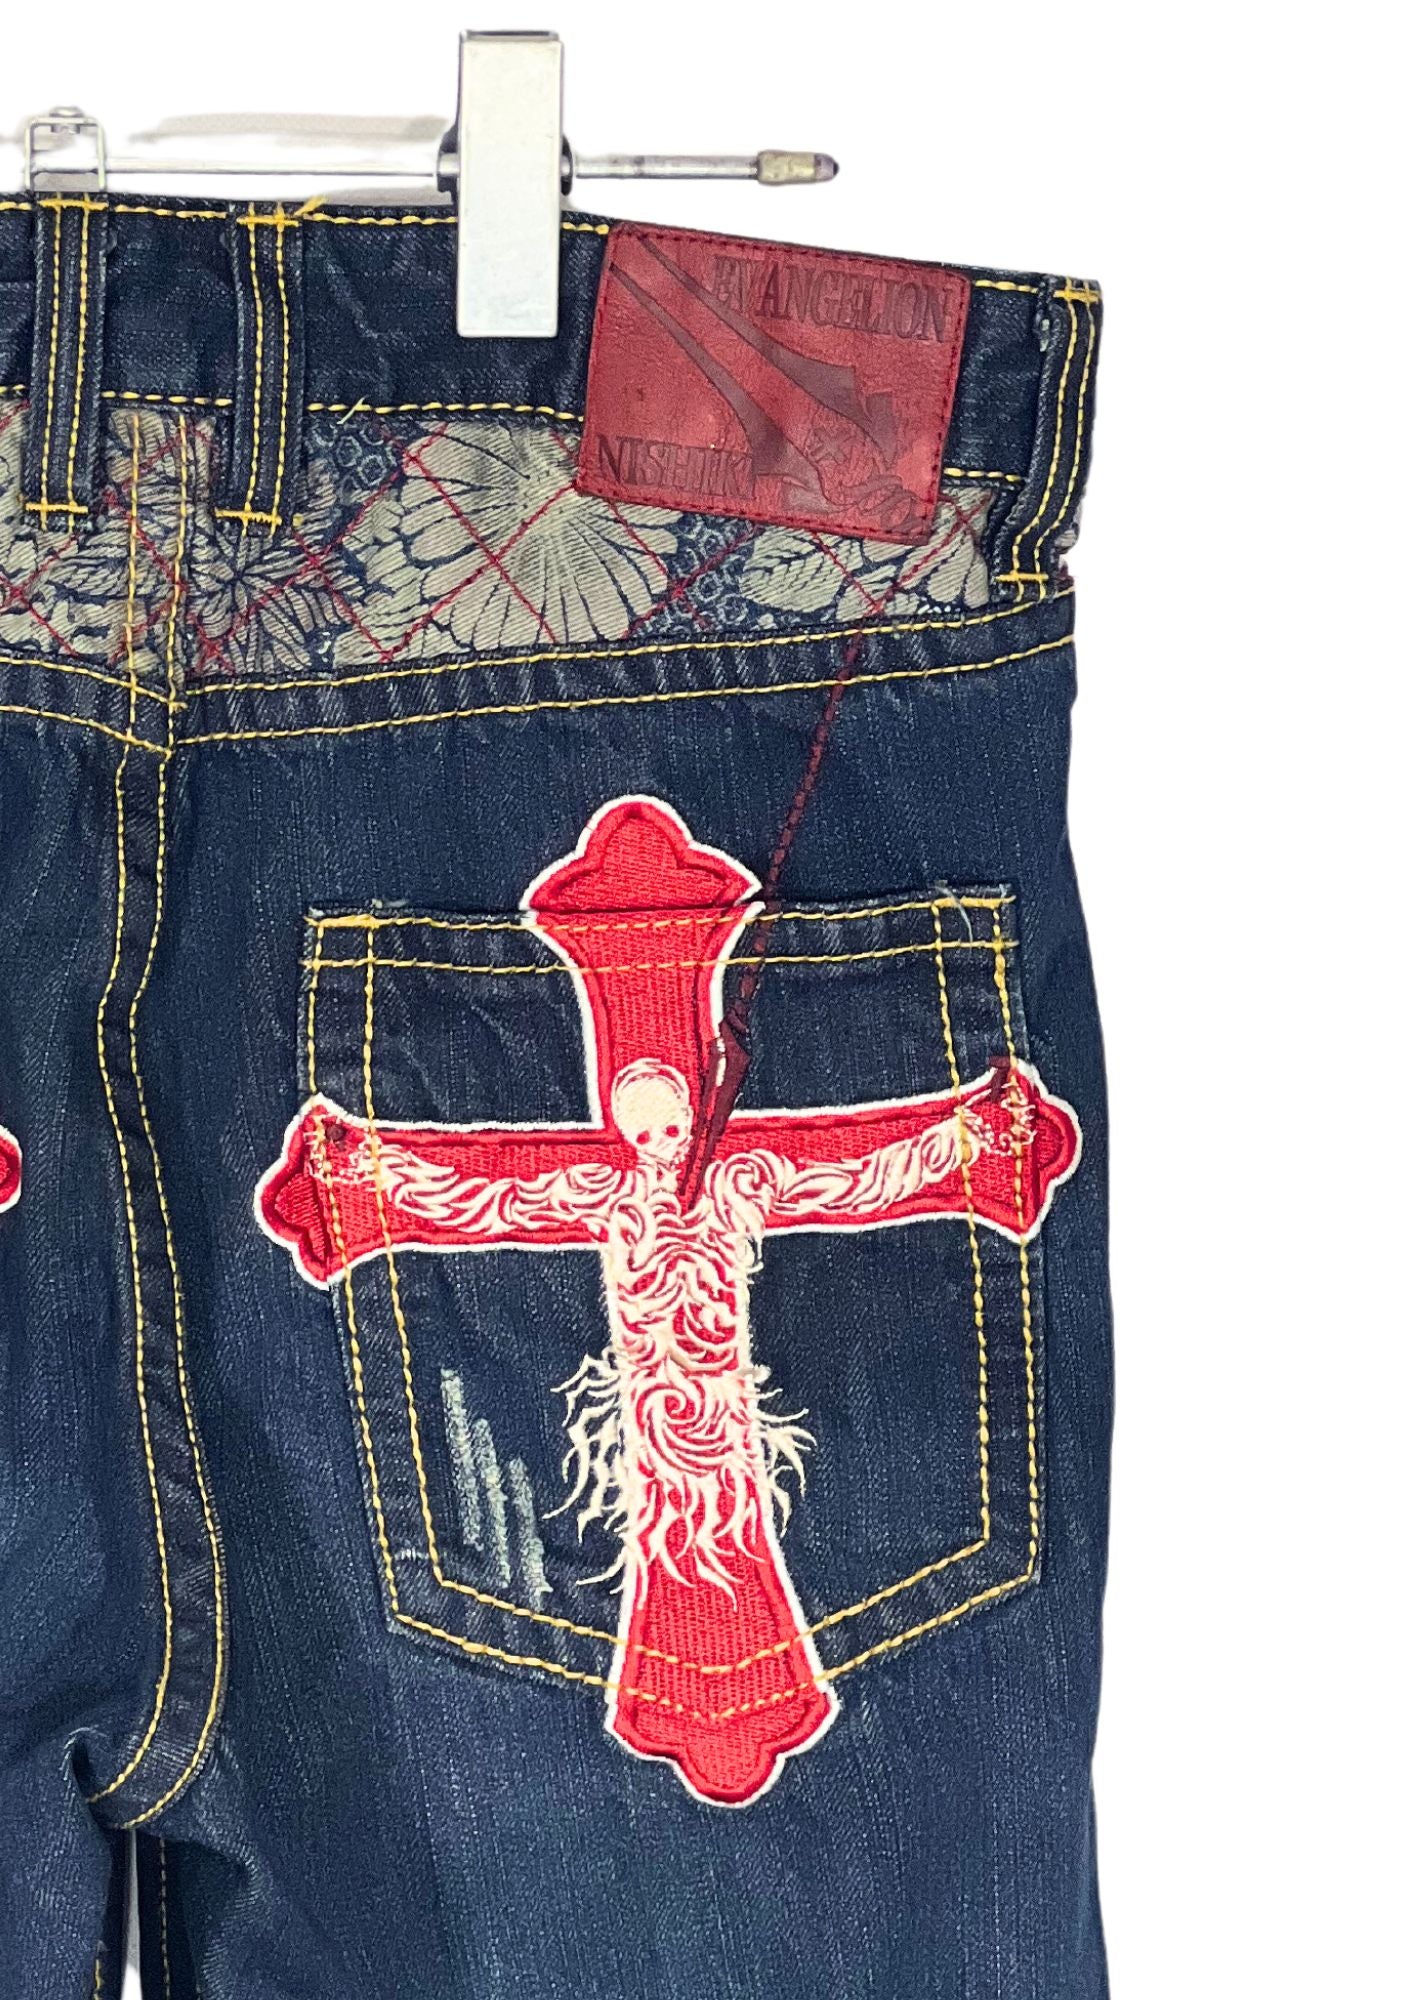 2010s Neon Genesis Evangelion x Nishiki Embroidered Lilith Half Denim Jeans